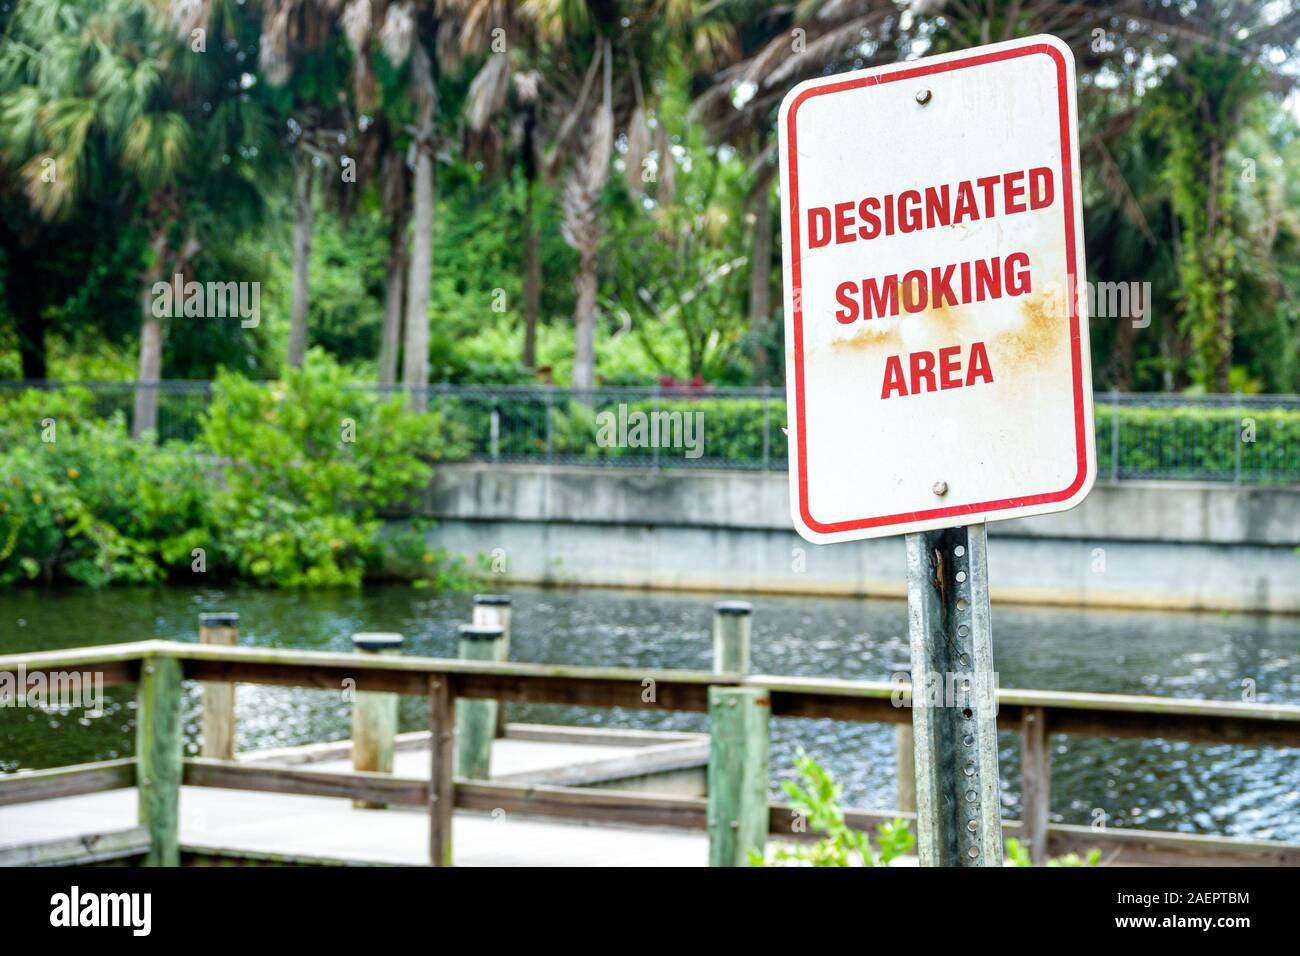 Port St. Saint Lucie Florida, North Fork St. Saint Lucie River Aquatic Preserve, Veterans Memorial Park, ausgewiesener Raucherbereich im Freien, Schild, FL190920011 Stockfoto